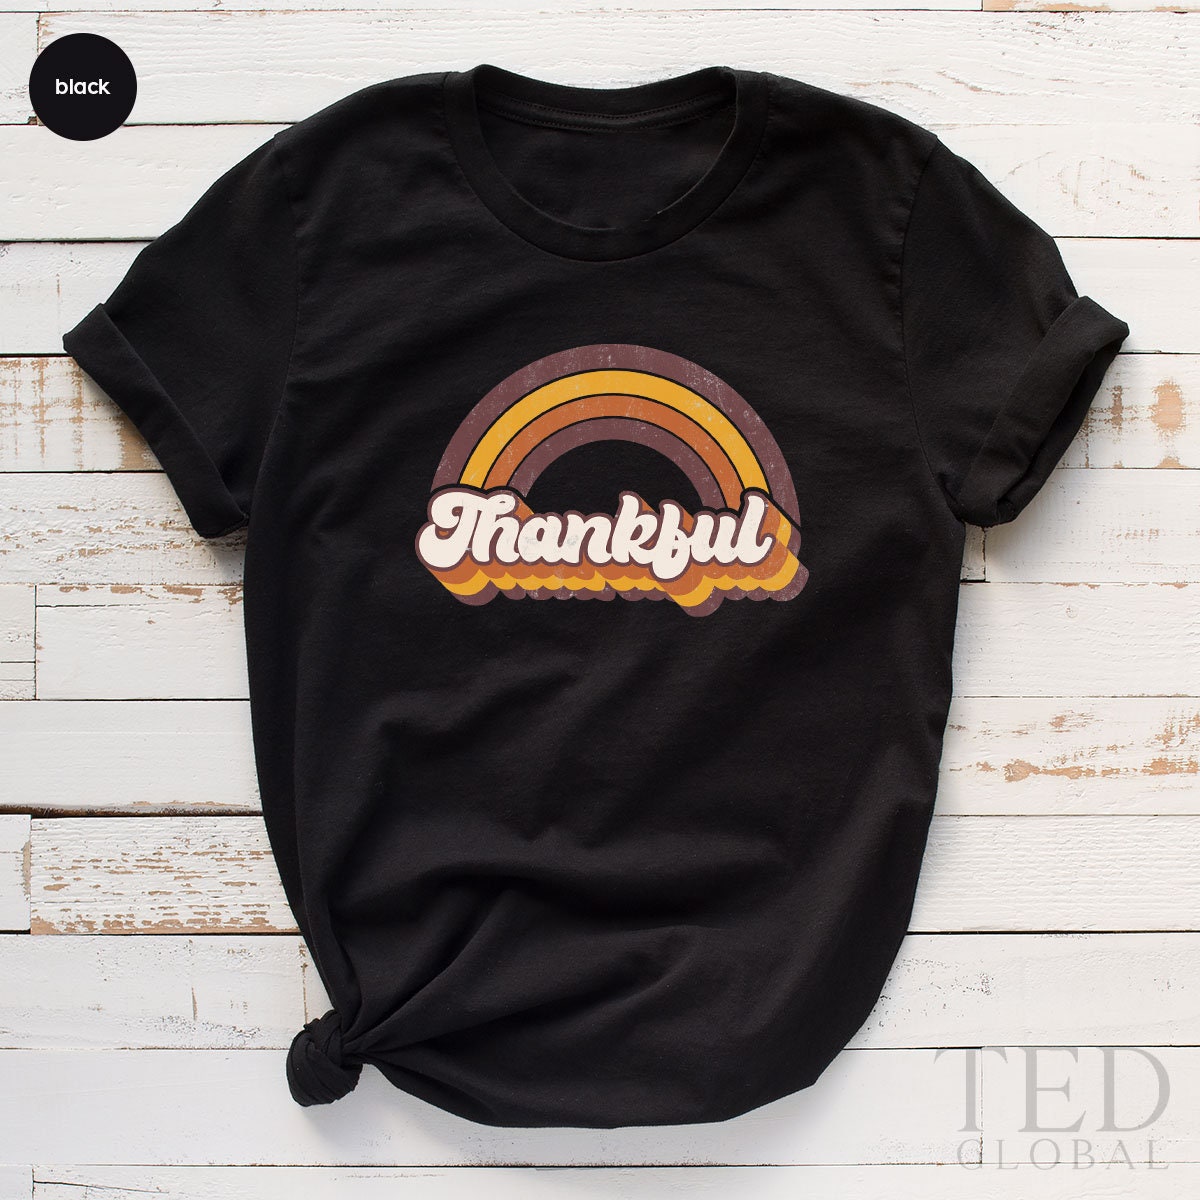 Thanksgiving Retro Rainbow T-Shirt, Family Thanksgiving T Shirt, Pumpkin Shirts, Fall Season Shirt, Rainy season TShirt, Thanksgiving Gift - Fastdeliverytees.com